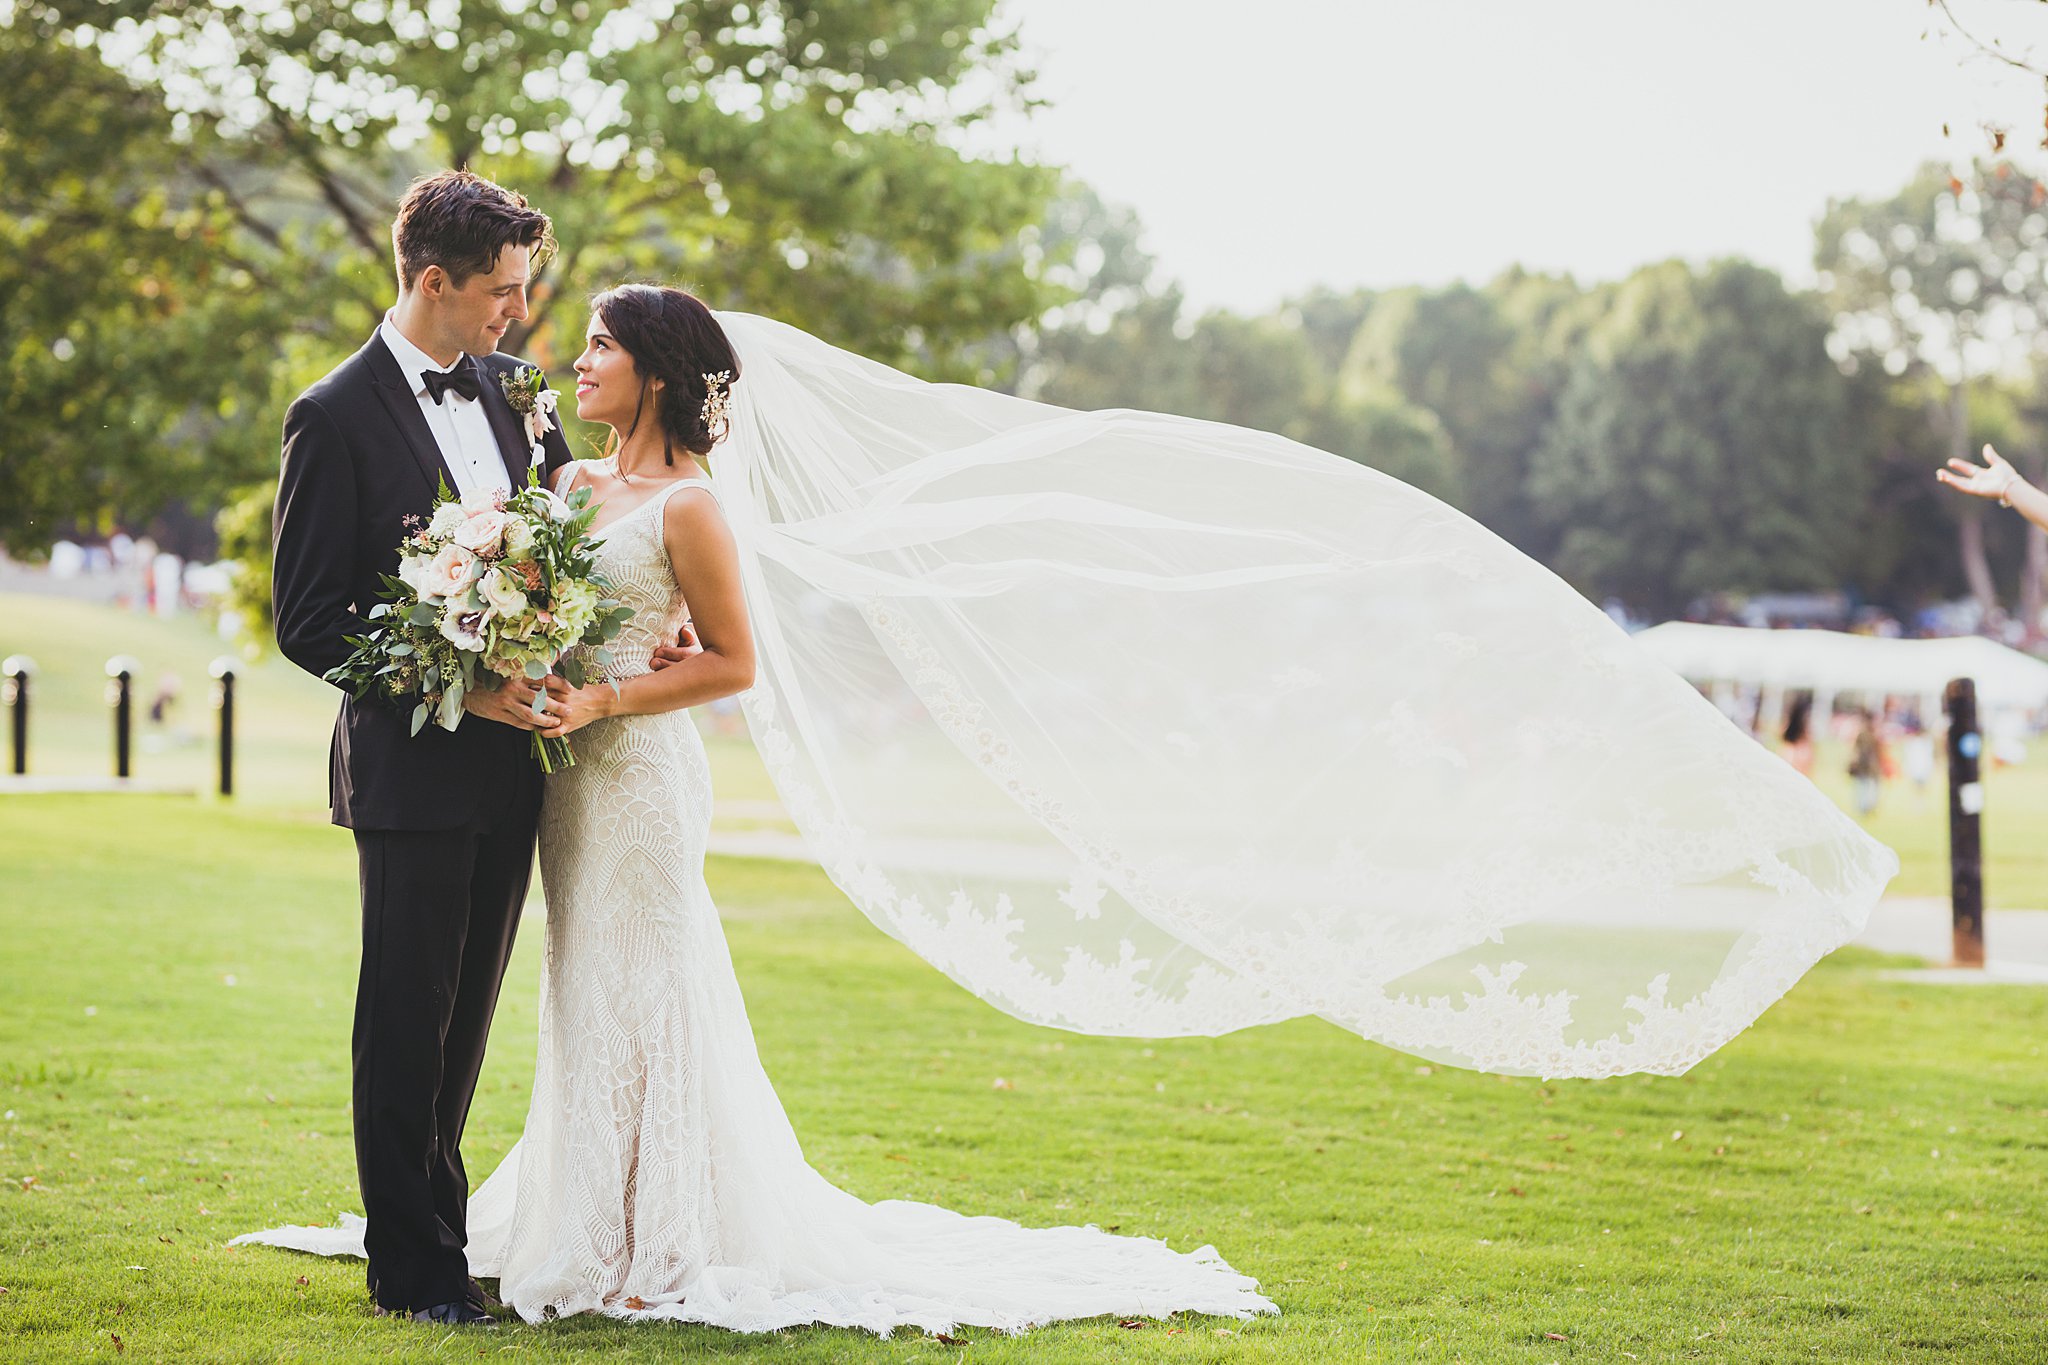 Piedmont Garden Tent Wedding Atlanta Best Wedding Photographers